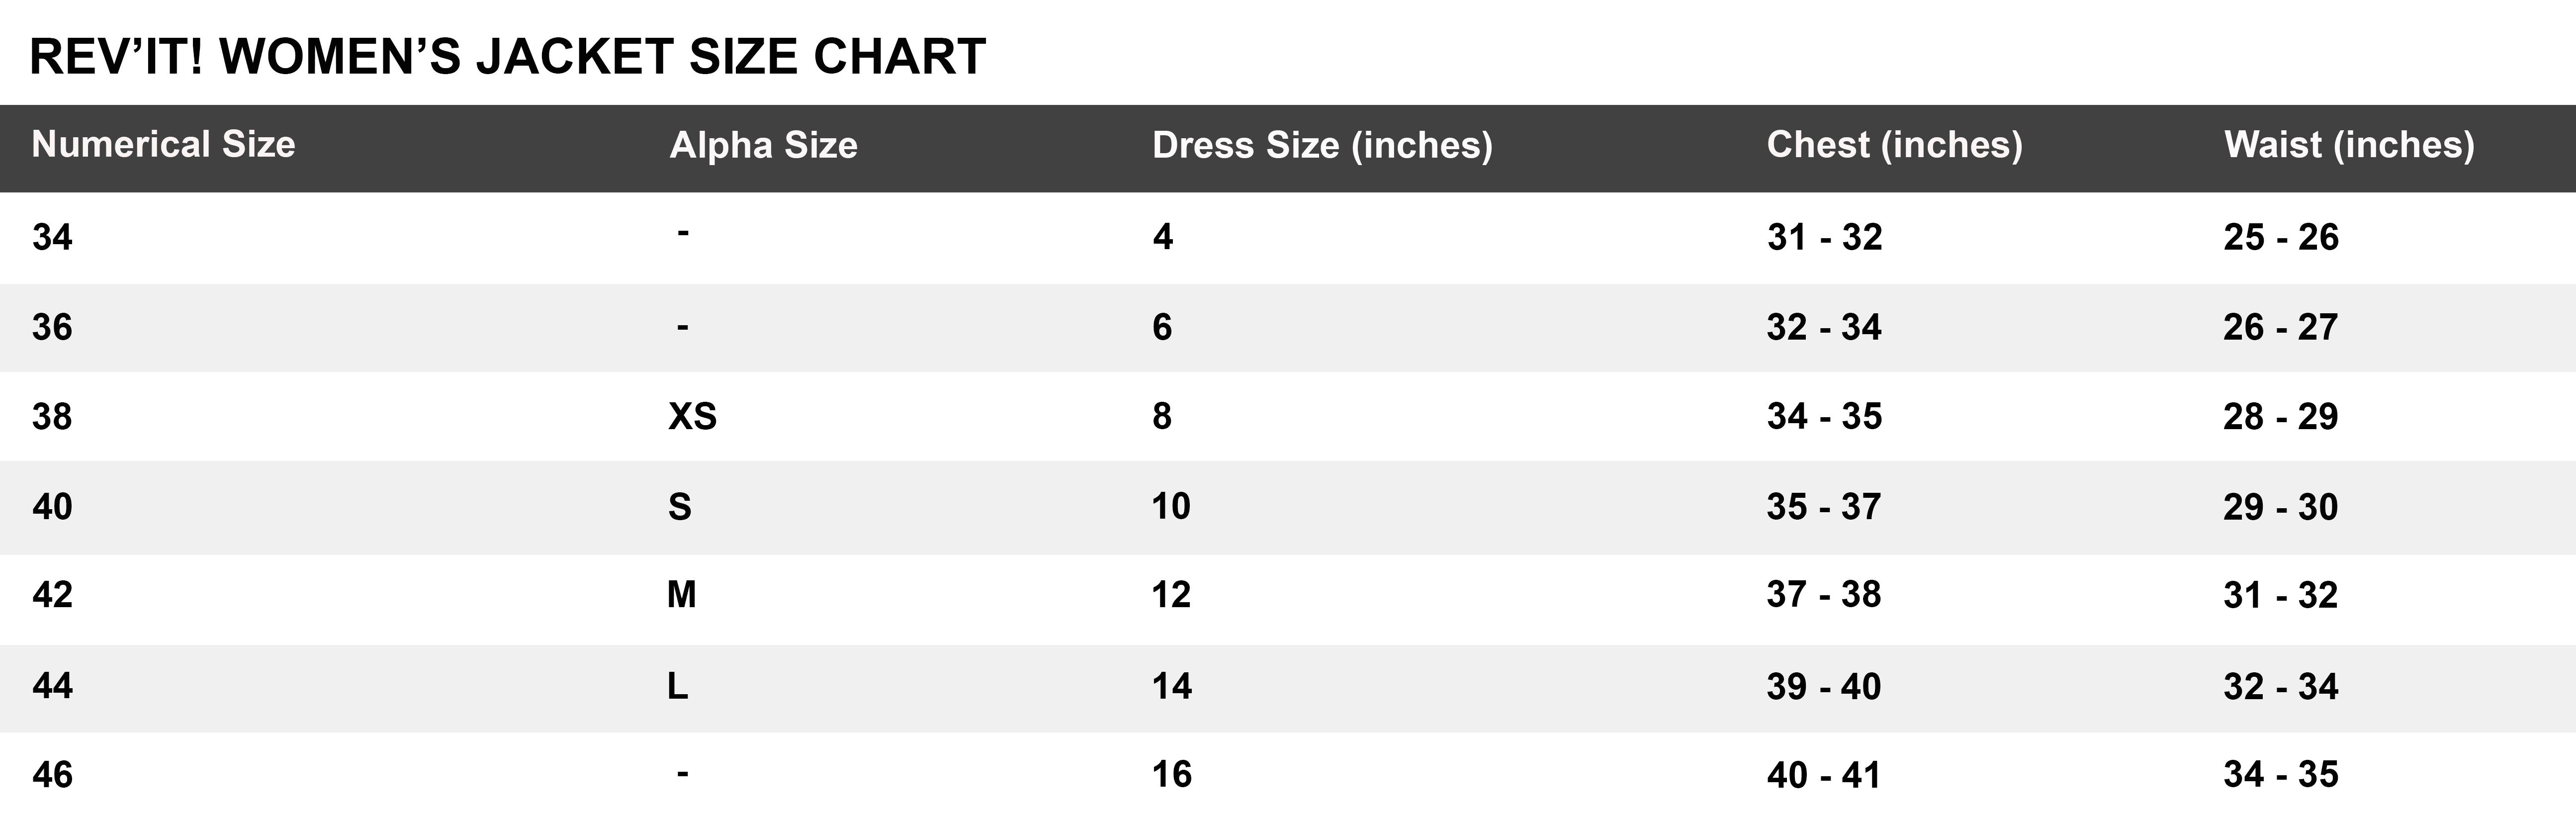 REV’IT! Woman Jacket Size Chart | Singapore Racing World